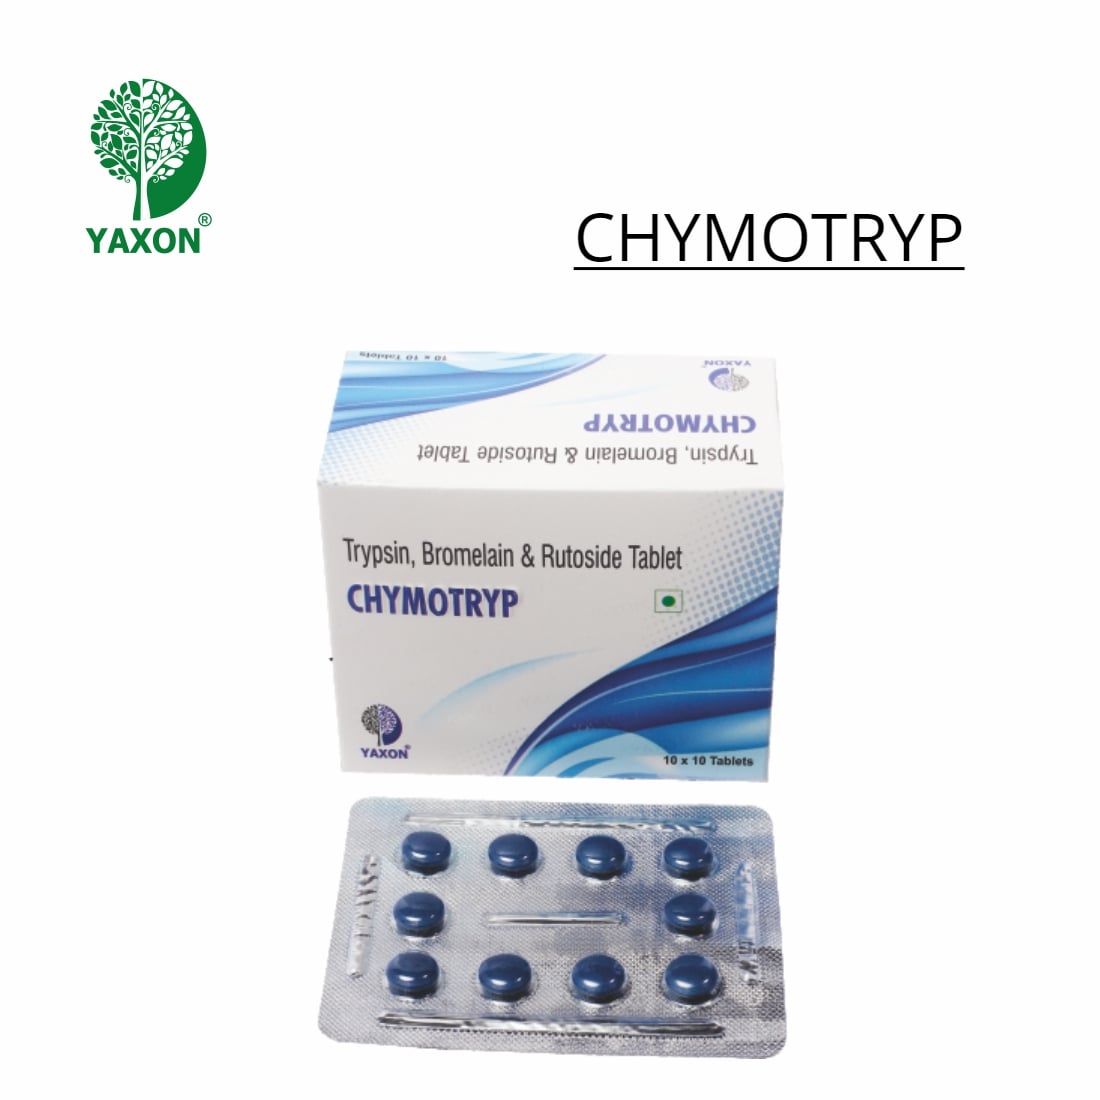 YAXON CHYMOTRYP DIGESTIVE Tablets